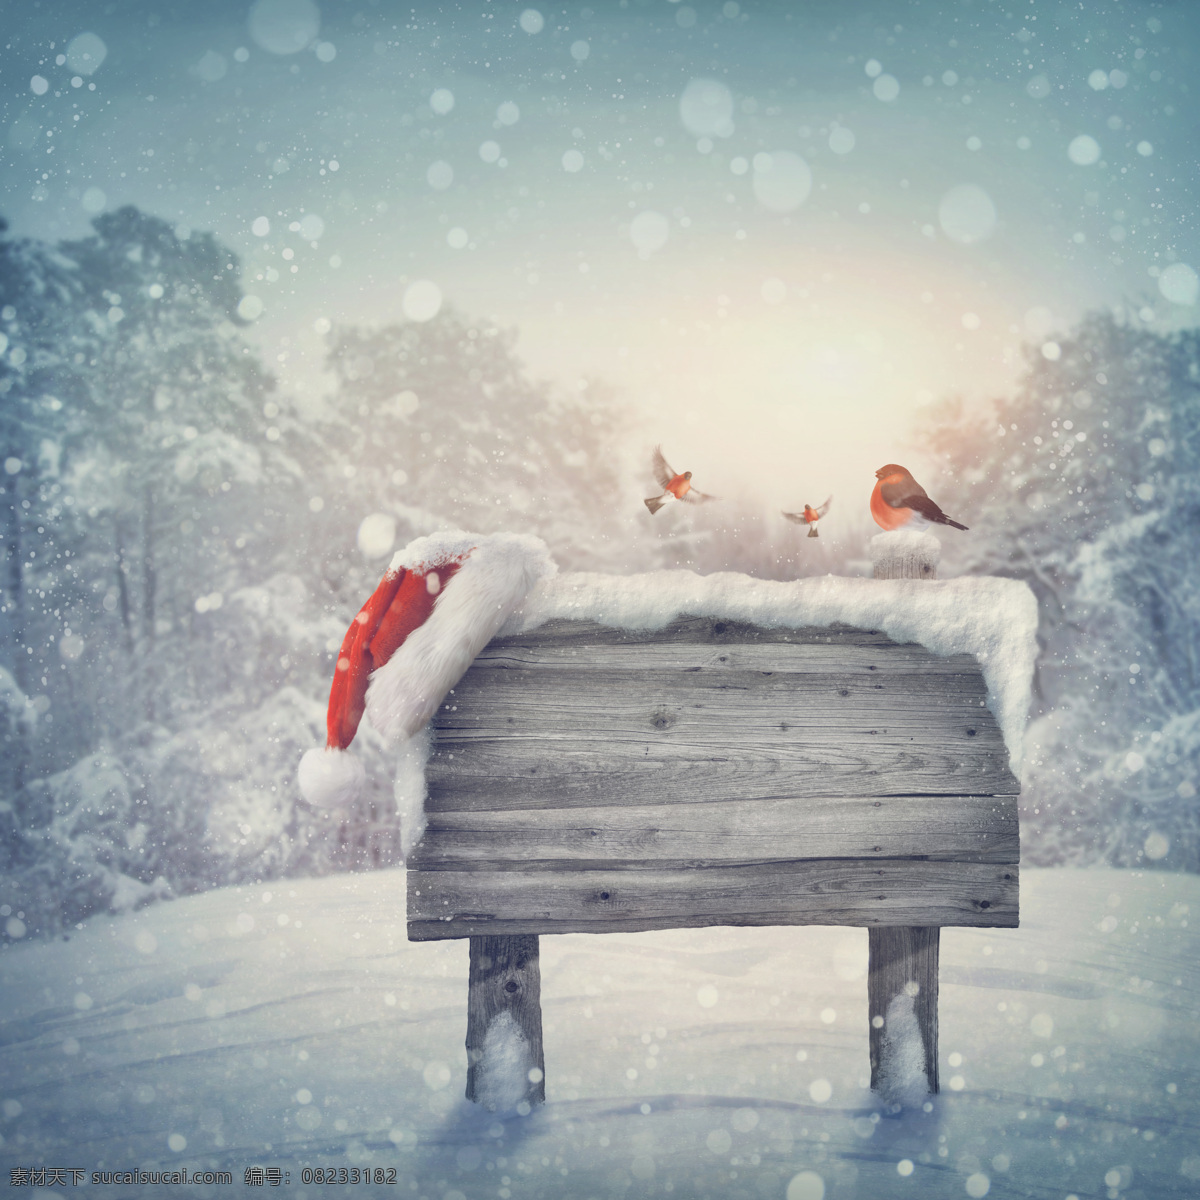 冬日 雪地 中 木板 雪花 小鸟 圣诞节 节日素材 节日庆典 生活百科